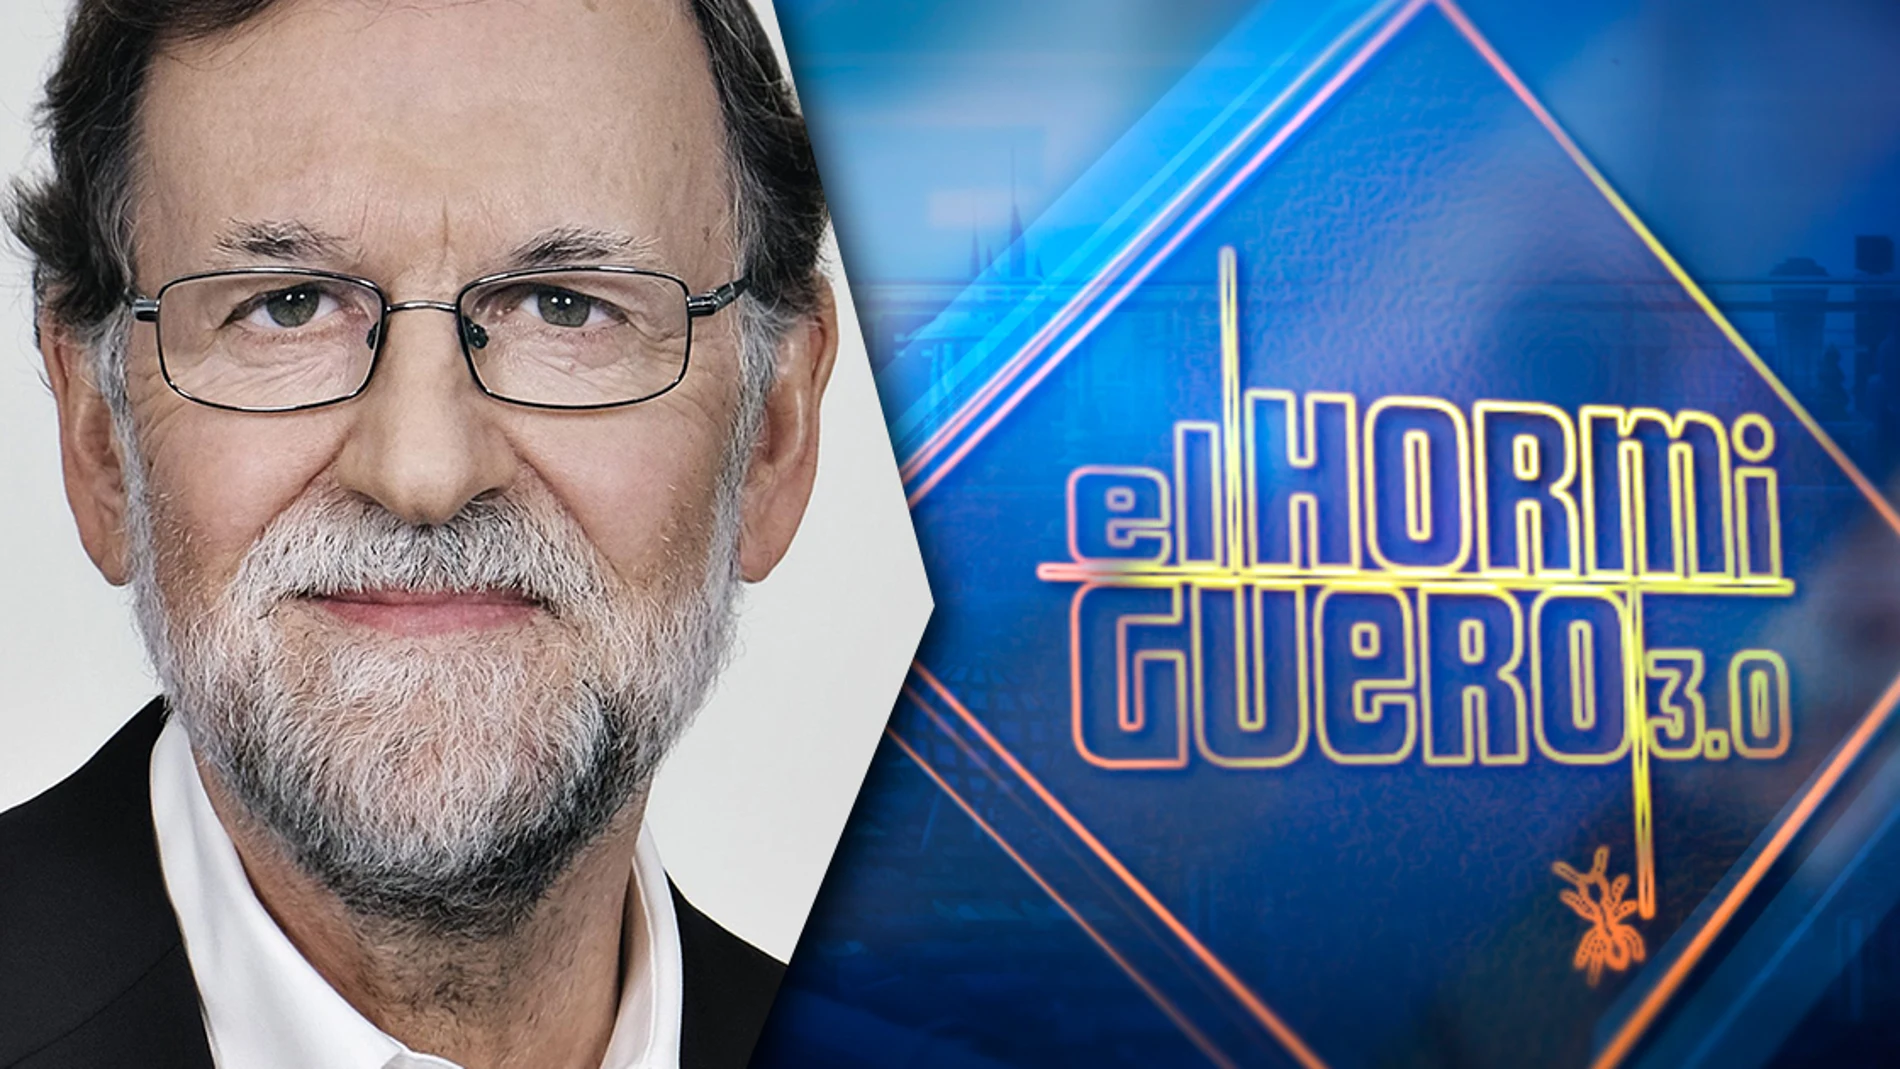 Mariano Rajoy aporta su visión de la política este martes 'El Hormiguero 3.0'